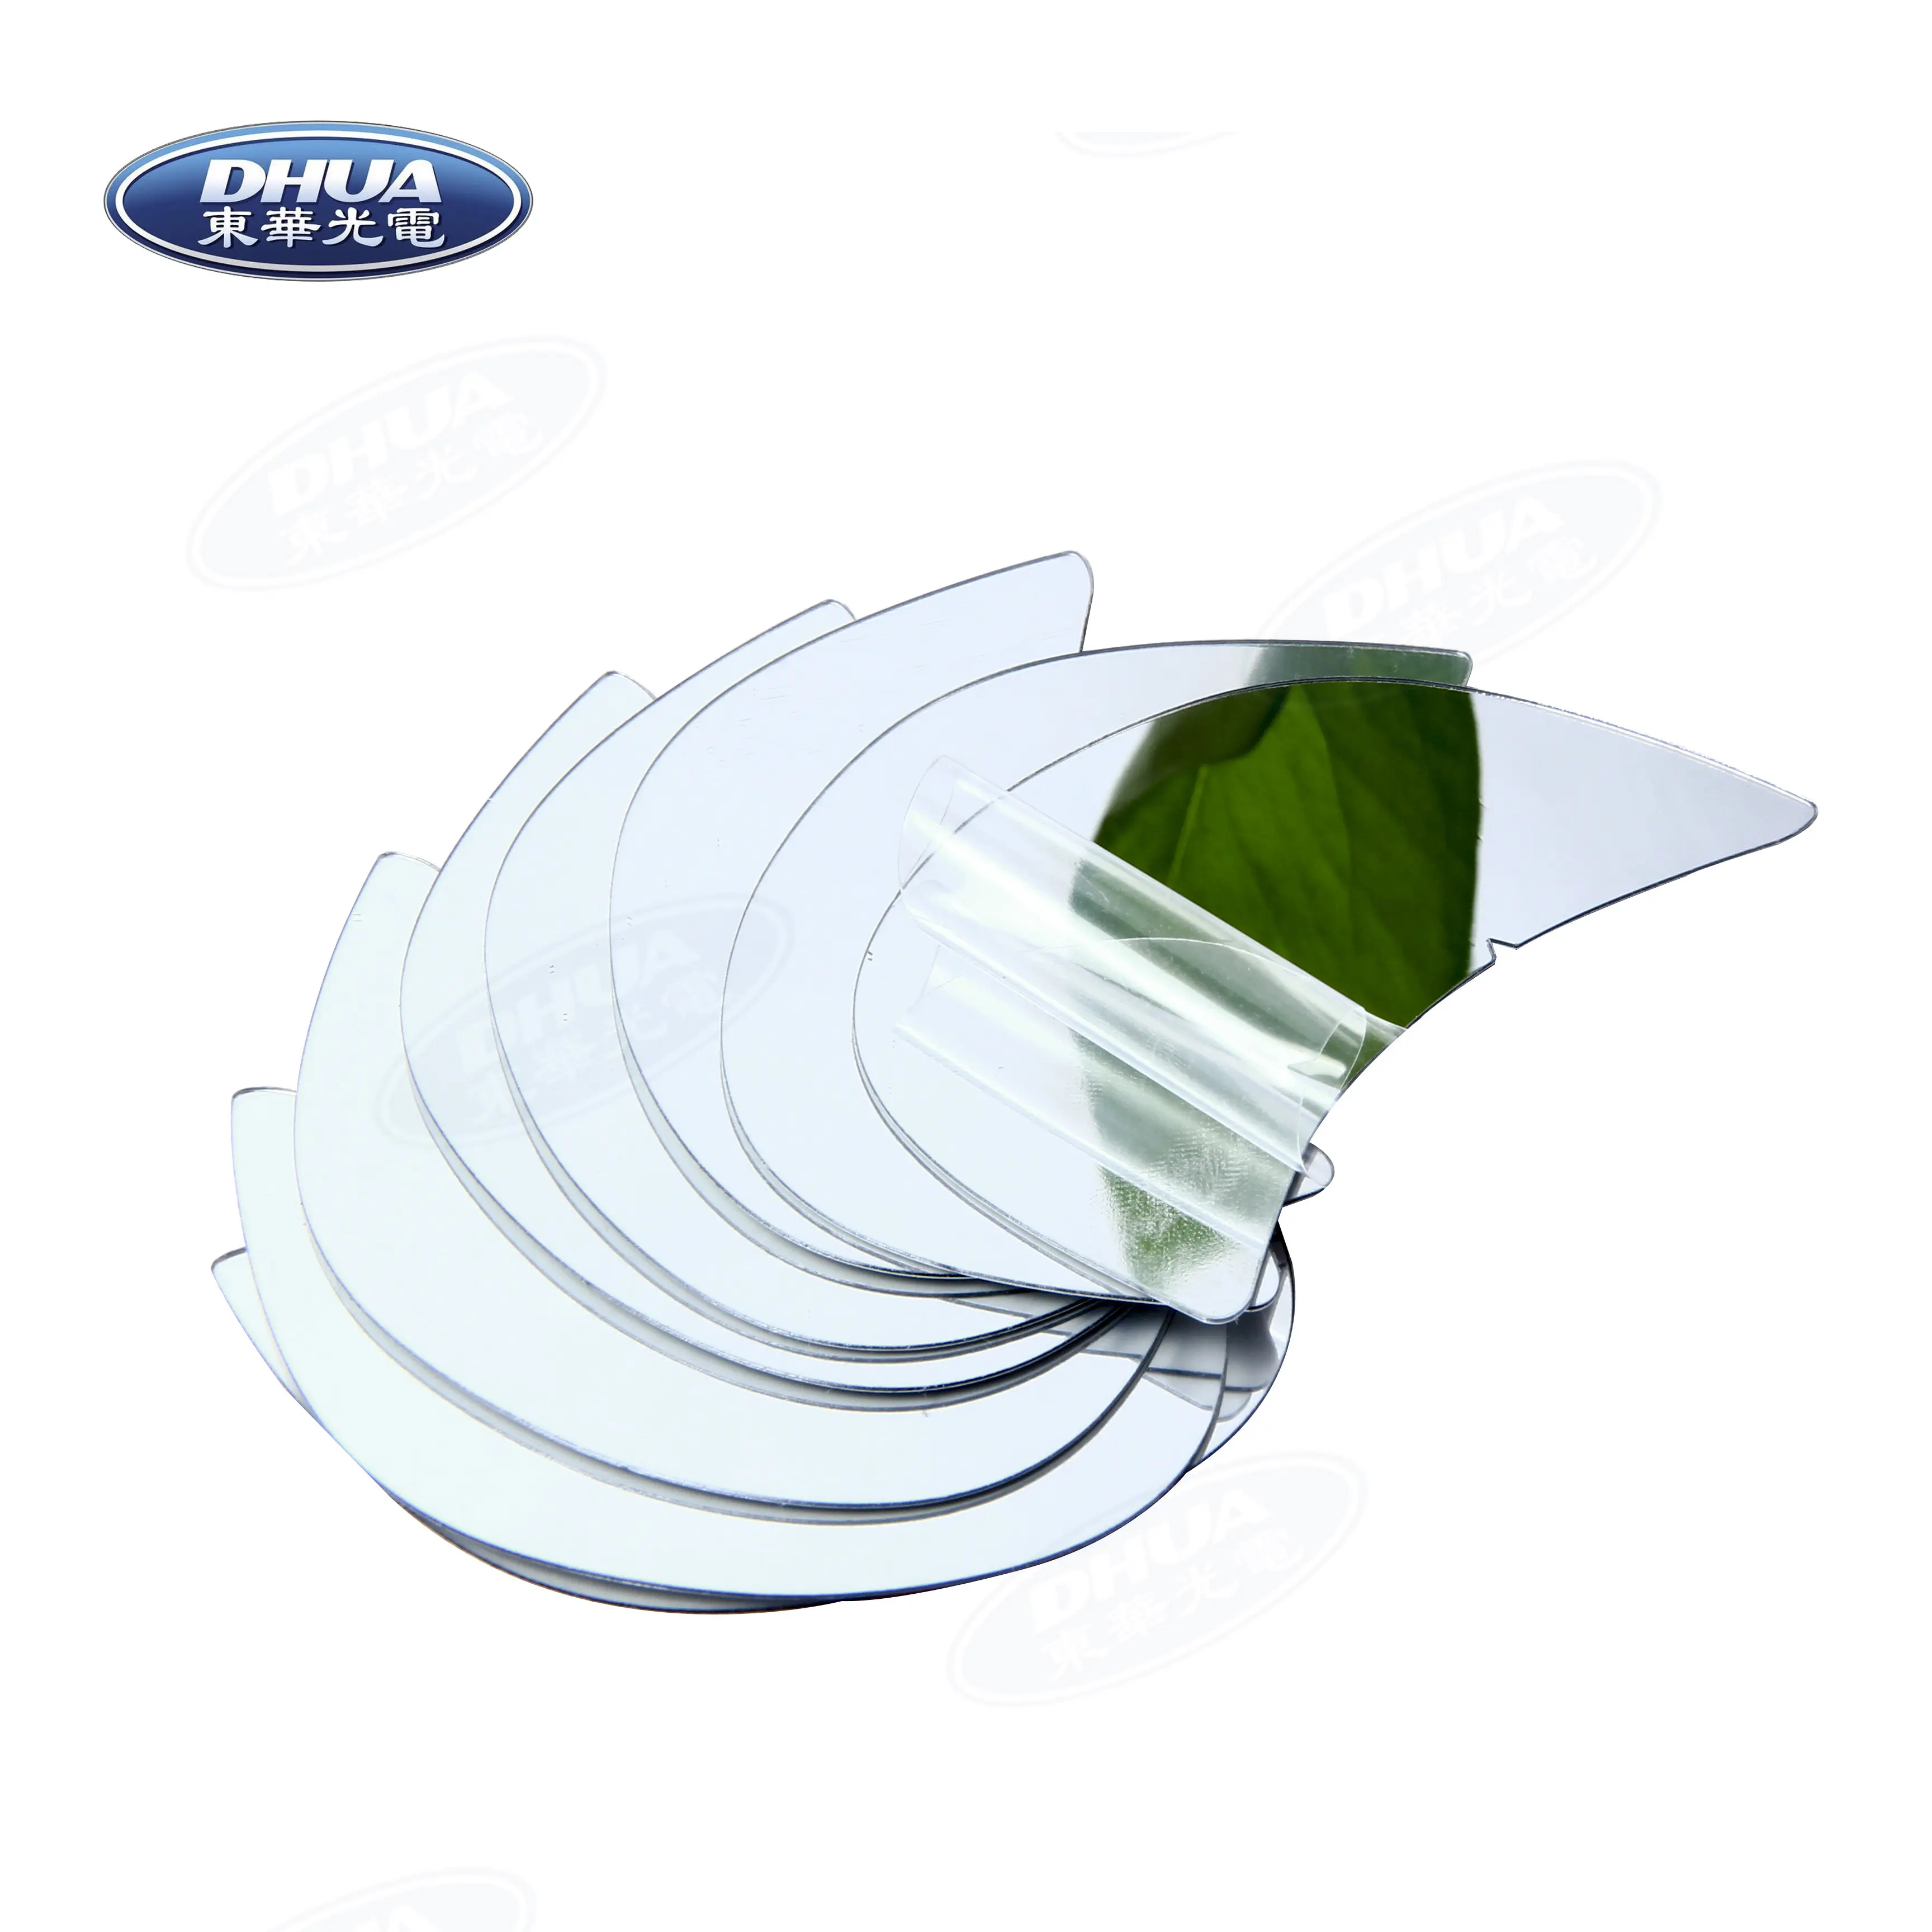 Flexible Spiegel platten Weiches Nicht-Glas, zuges chnitten auf PETG-Material Kunststoffs piegel platte